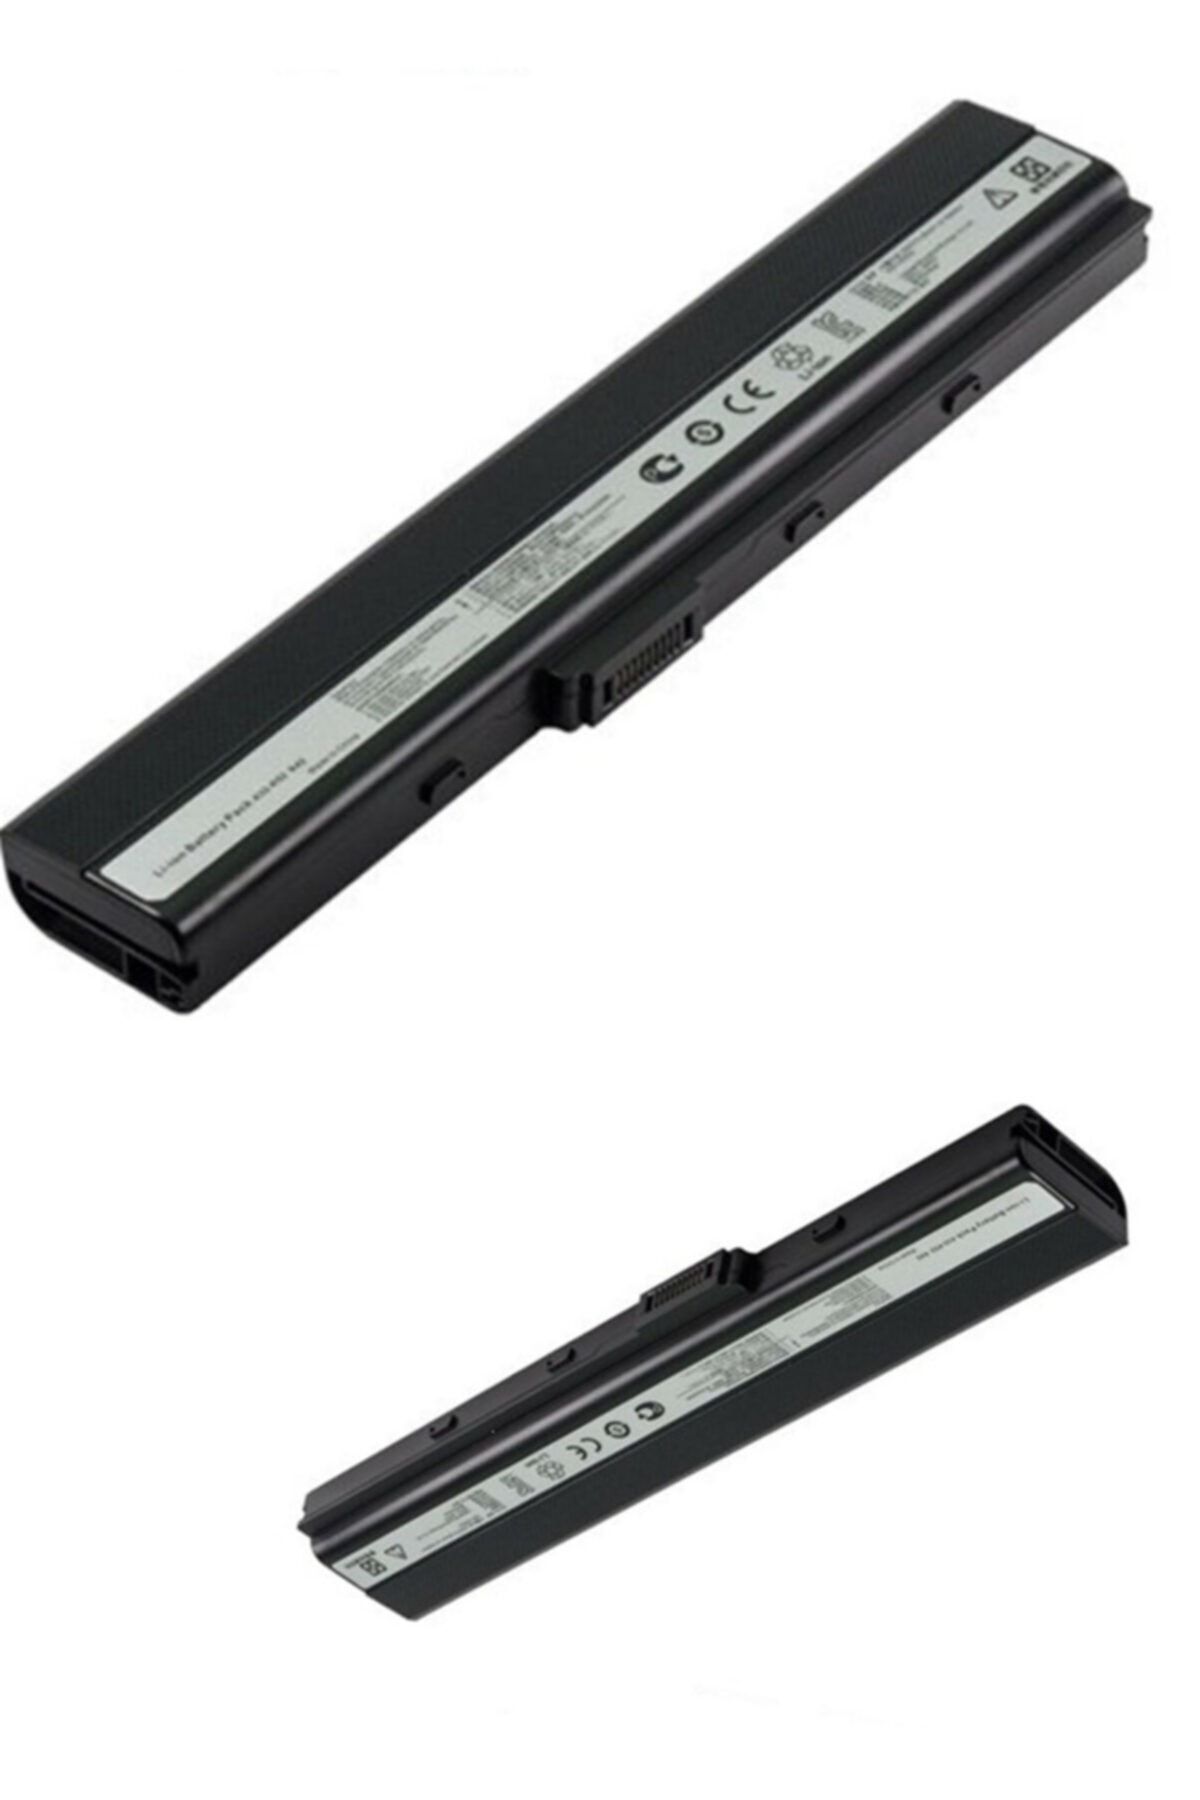 ASUS X52n X5ı X67 X52jc X52jb Uyumlu Notebook Bataryası, Pili